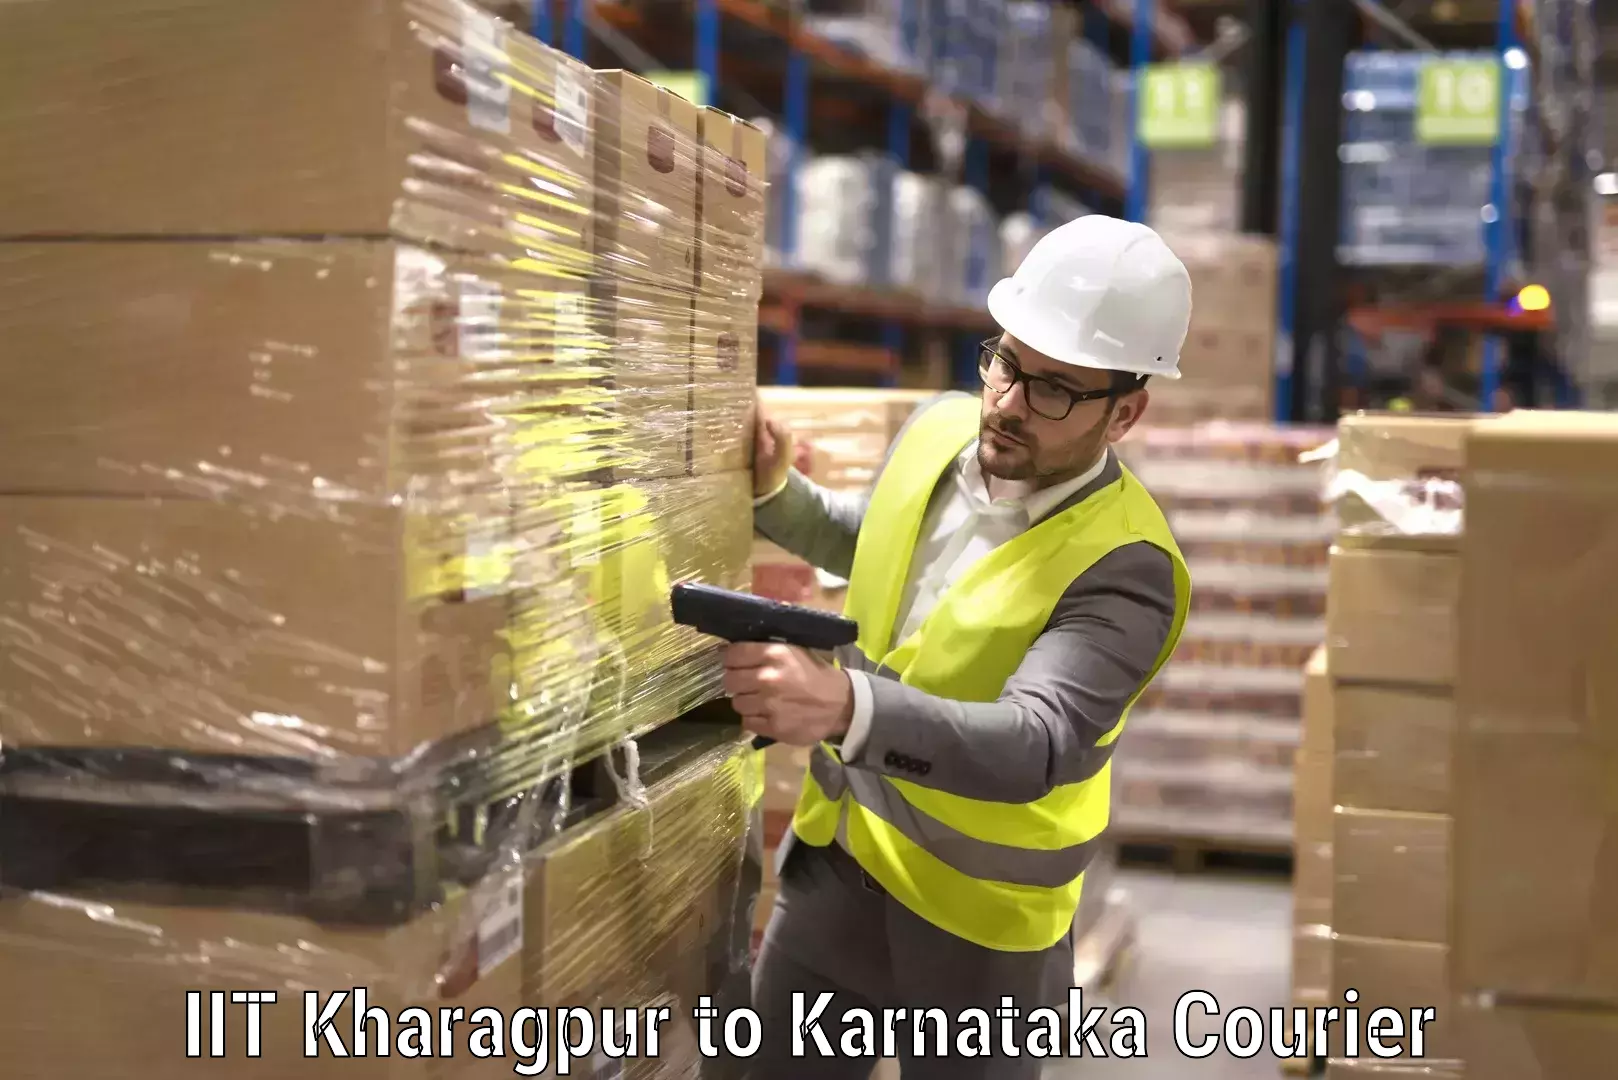 Home shifting experts IIT Kharagpur to Karnataka